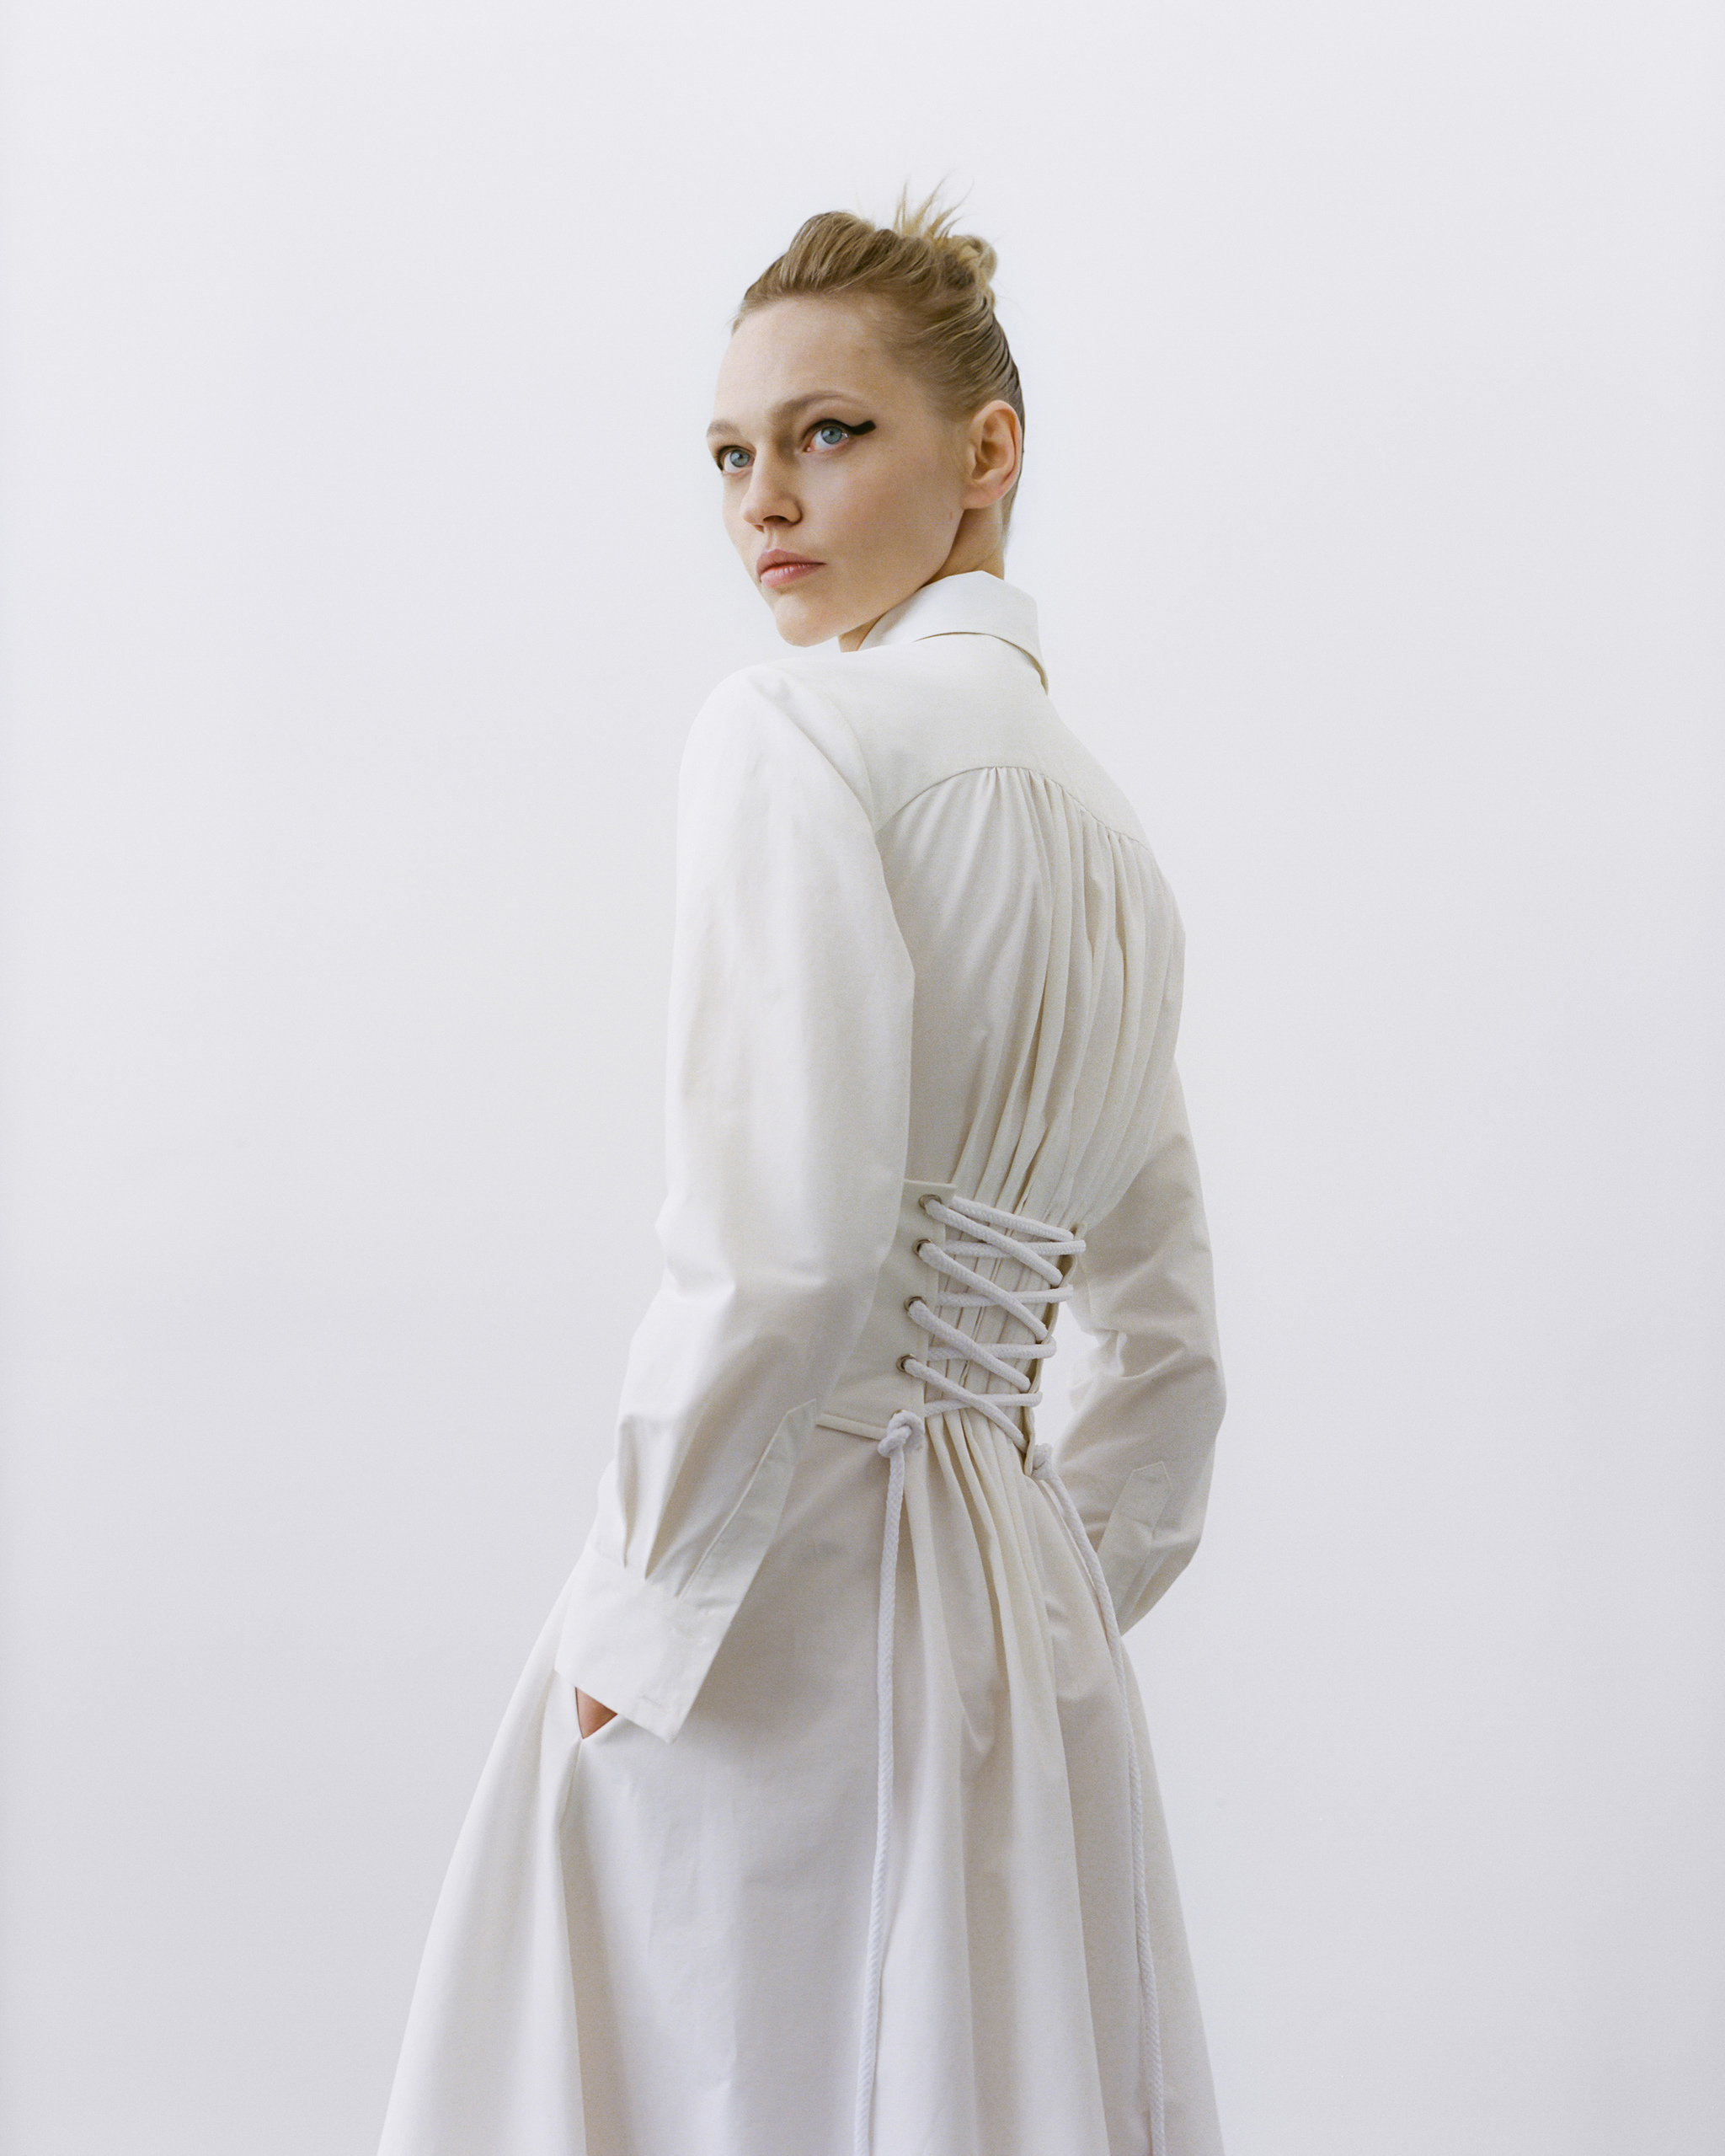 El blanco transmite paz y minimalismo a través de este vestido de Aknvas.